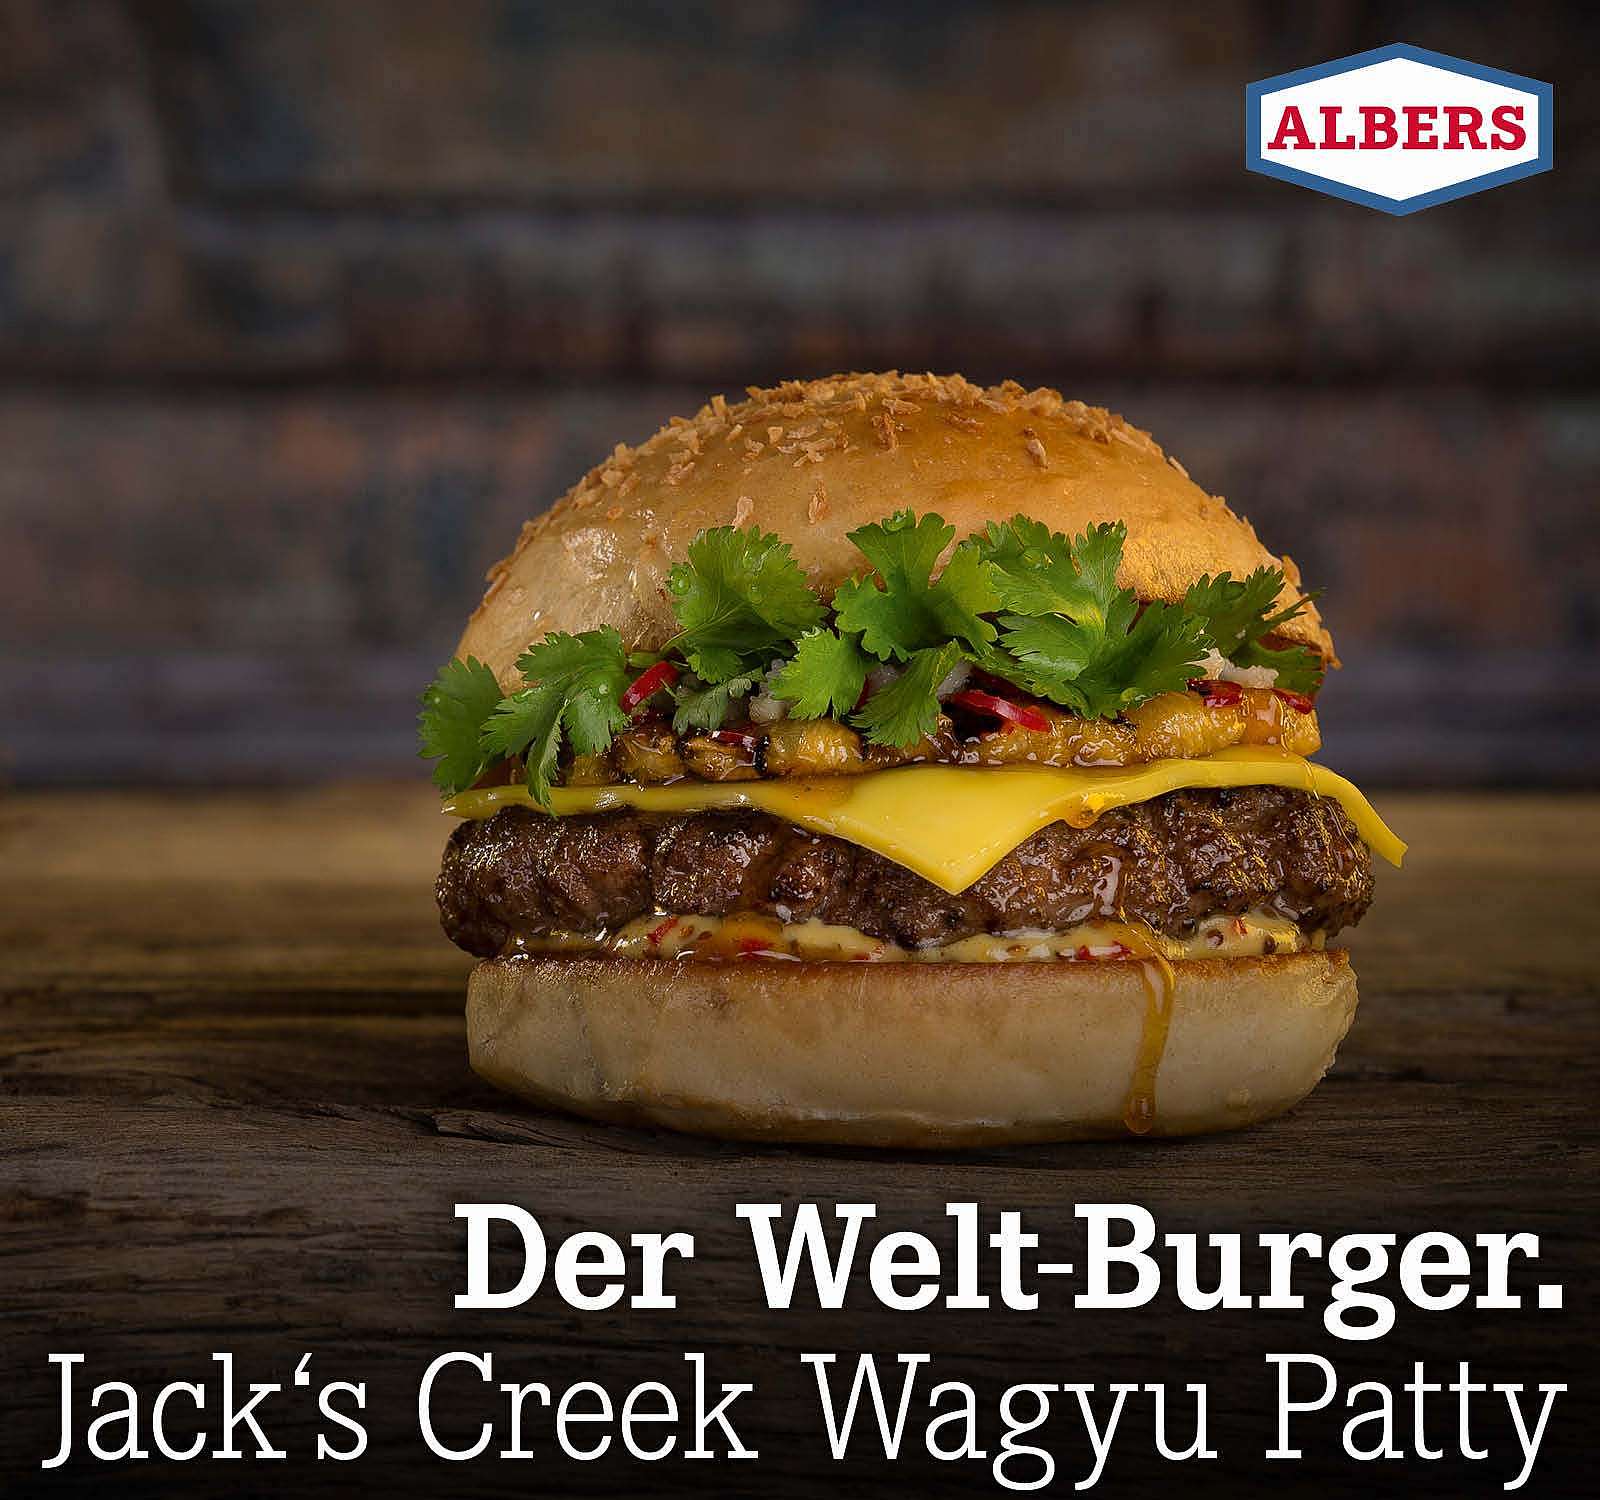 Der Welt-Burger. Jack’s Creek Wagyu Patty